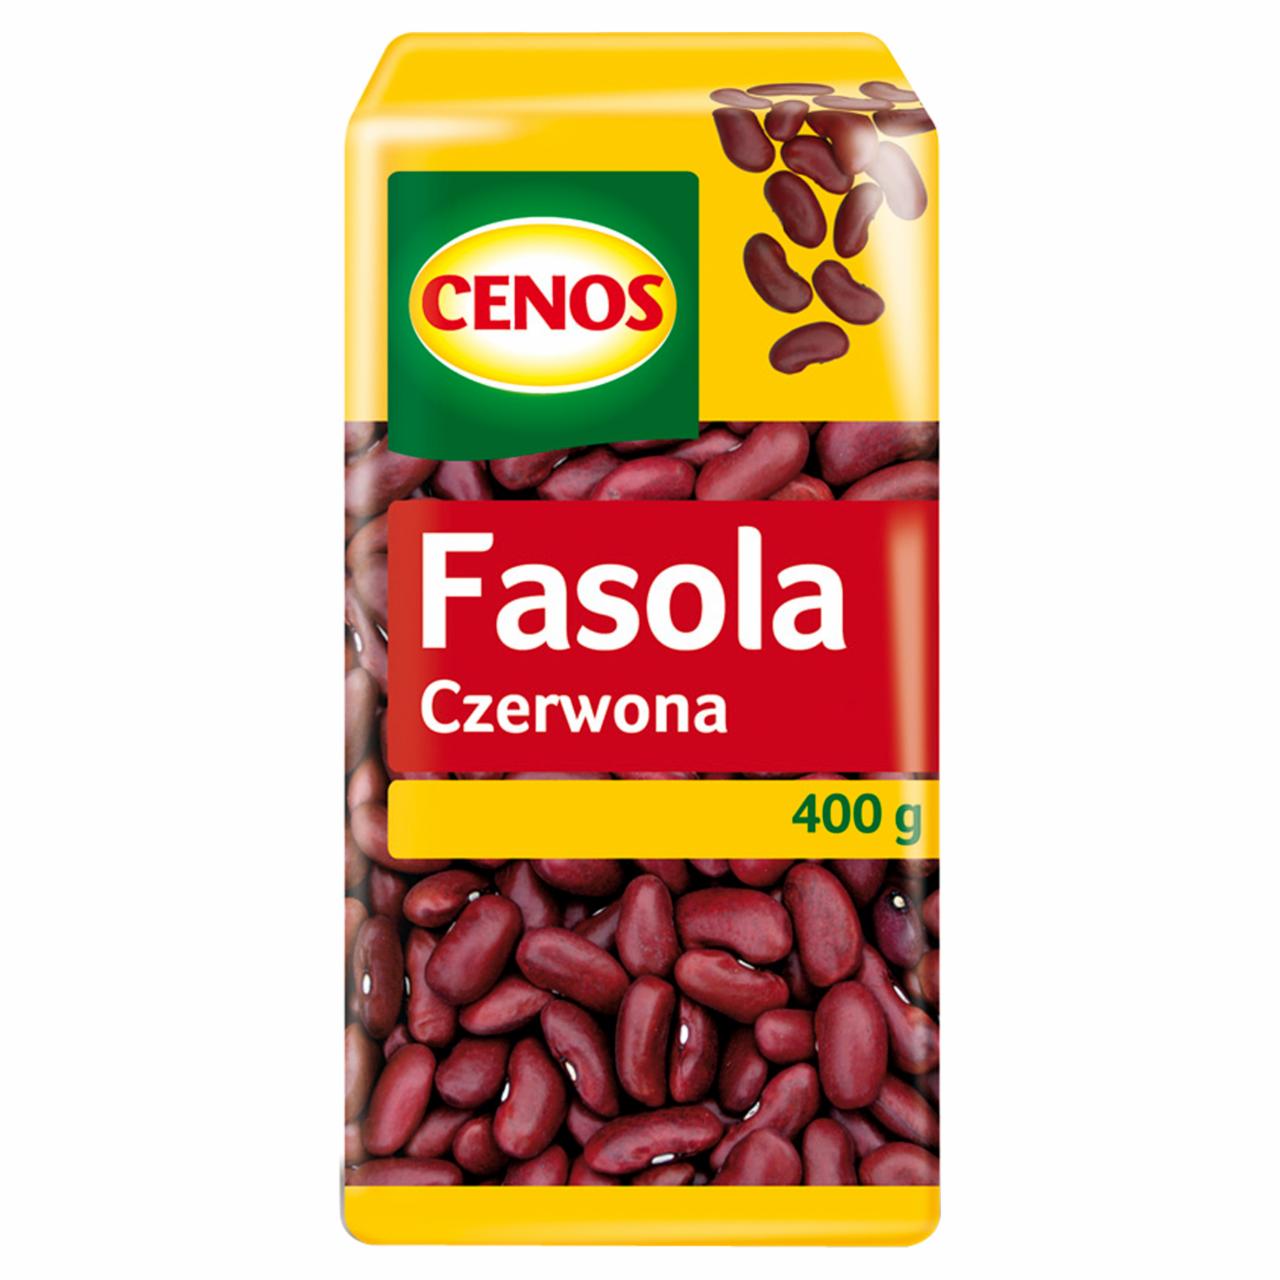 Zdjęcia - Cenos Fasola czerwona 400 g